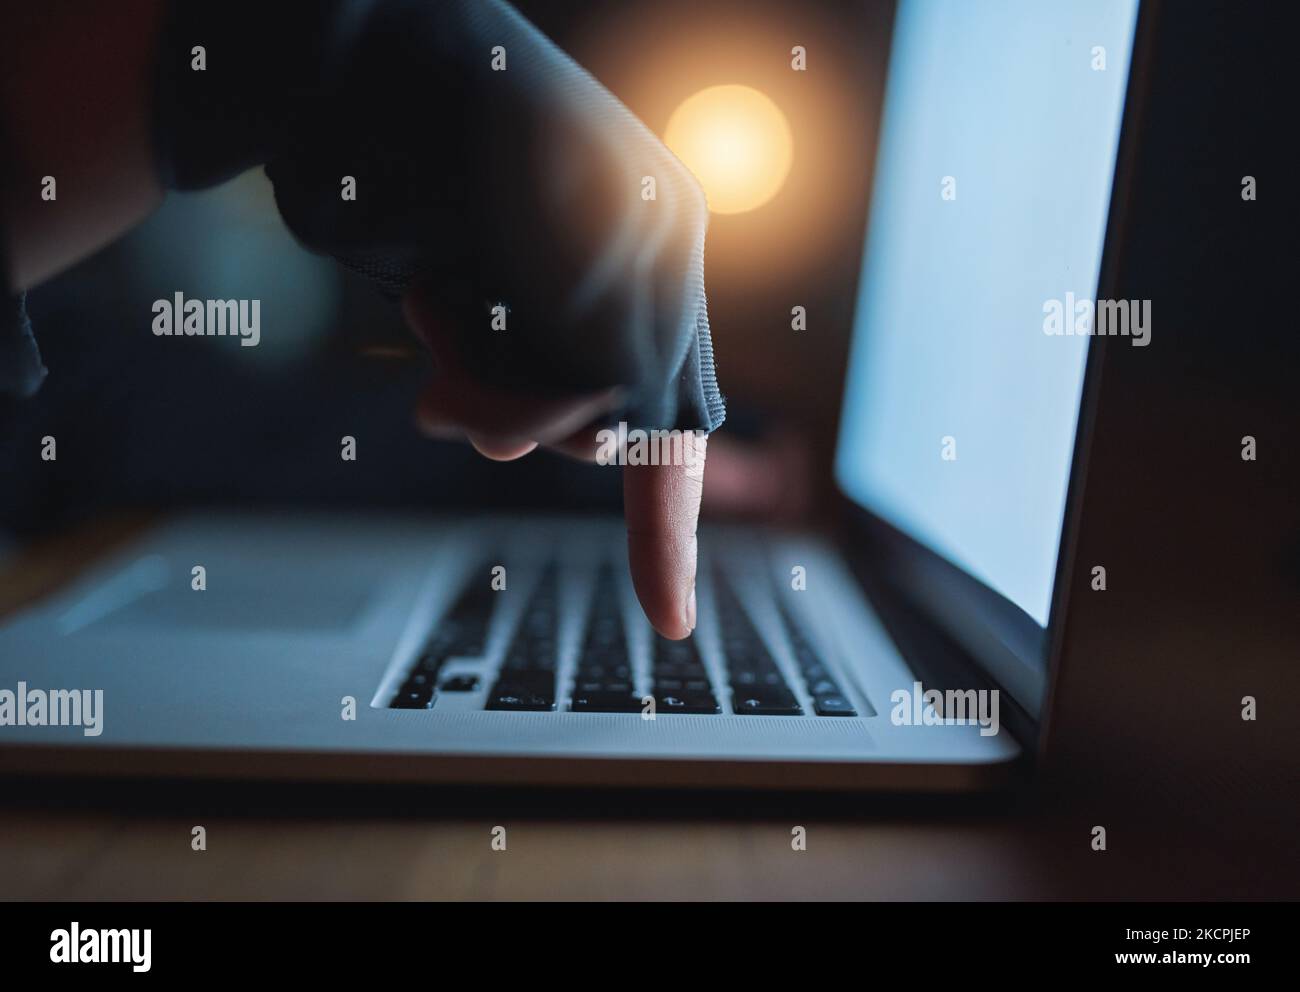 Seien Sie vorsichtig, was Sie online teilen. Ein nicht erkennbarer Hacker mit einem Laptop im Dunkeln. Stockfoto